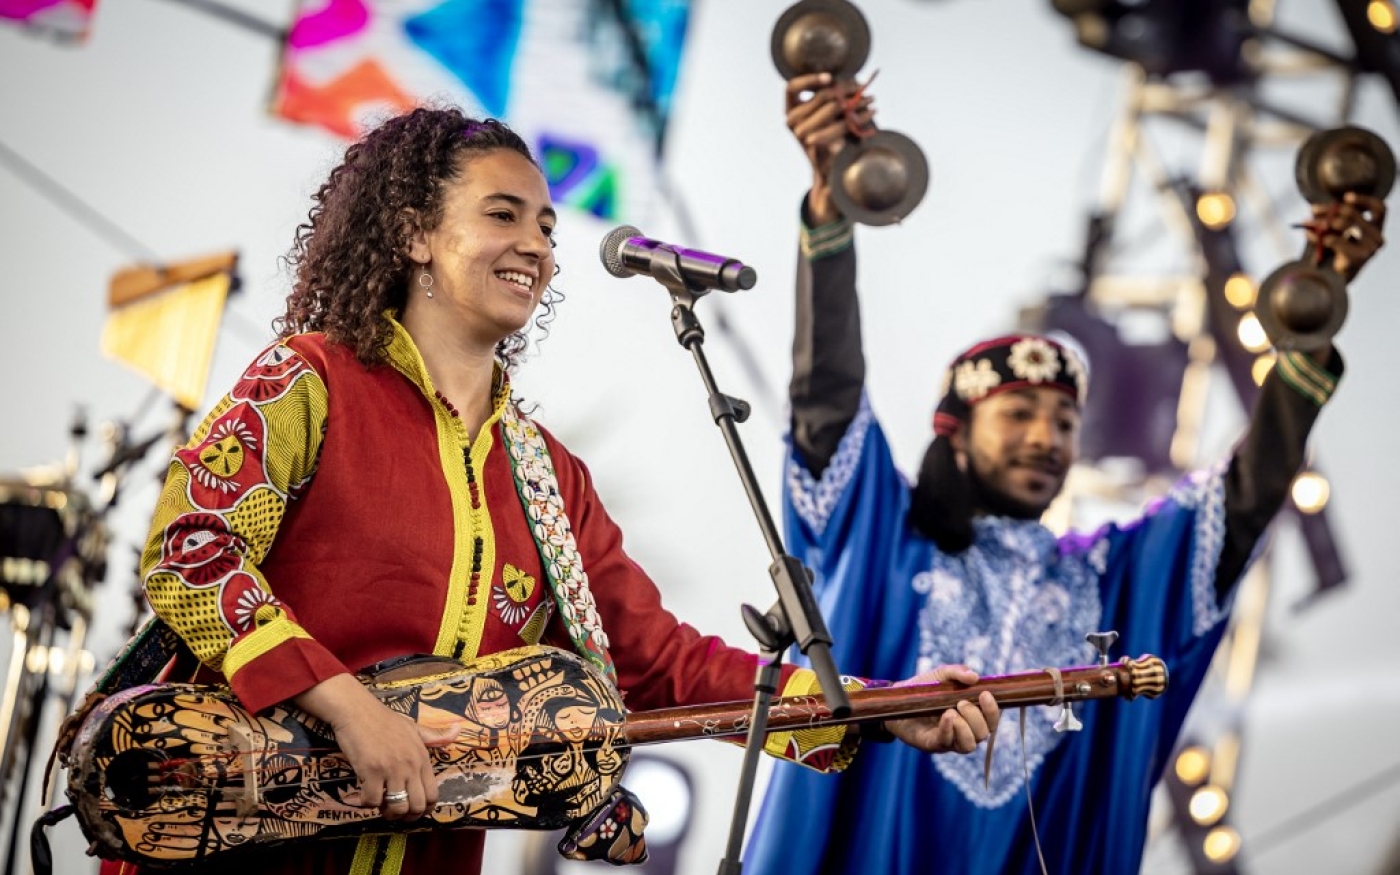 L’artiste marocaine Hind Ennaira, membre d’un groupe traditionnel gnaoua, lors de la 24e édition du Festival des musiques du monde Gnaoua à Essaouira, le 24 juin 2023 (AFP/Fadel Senna)